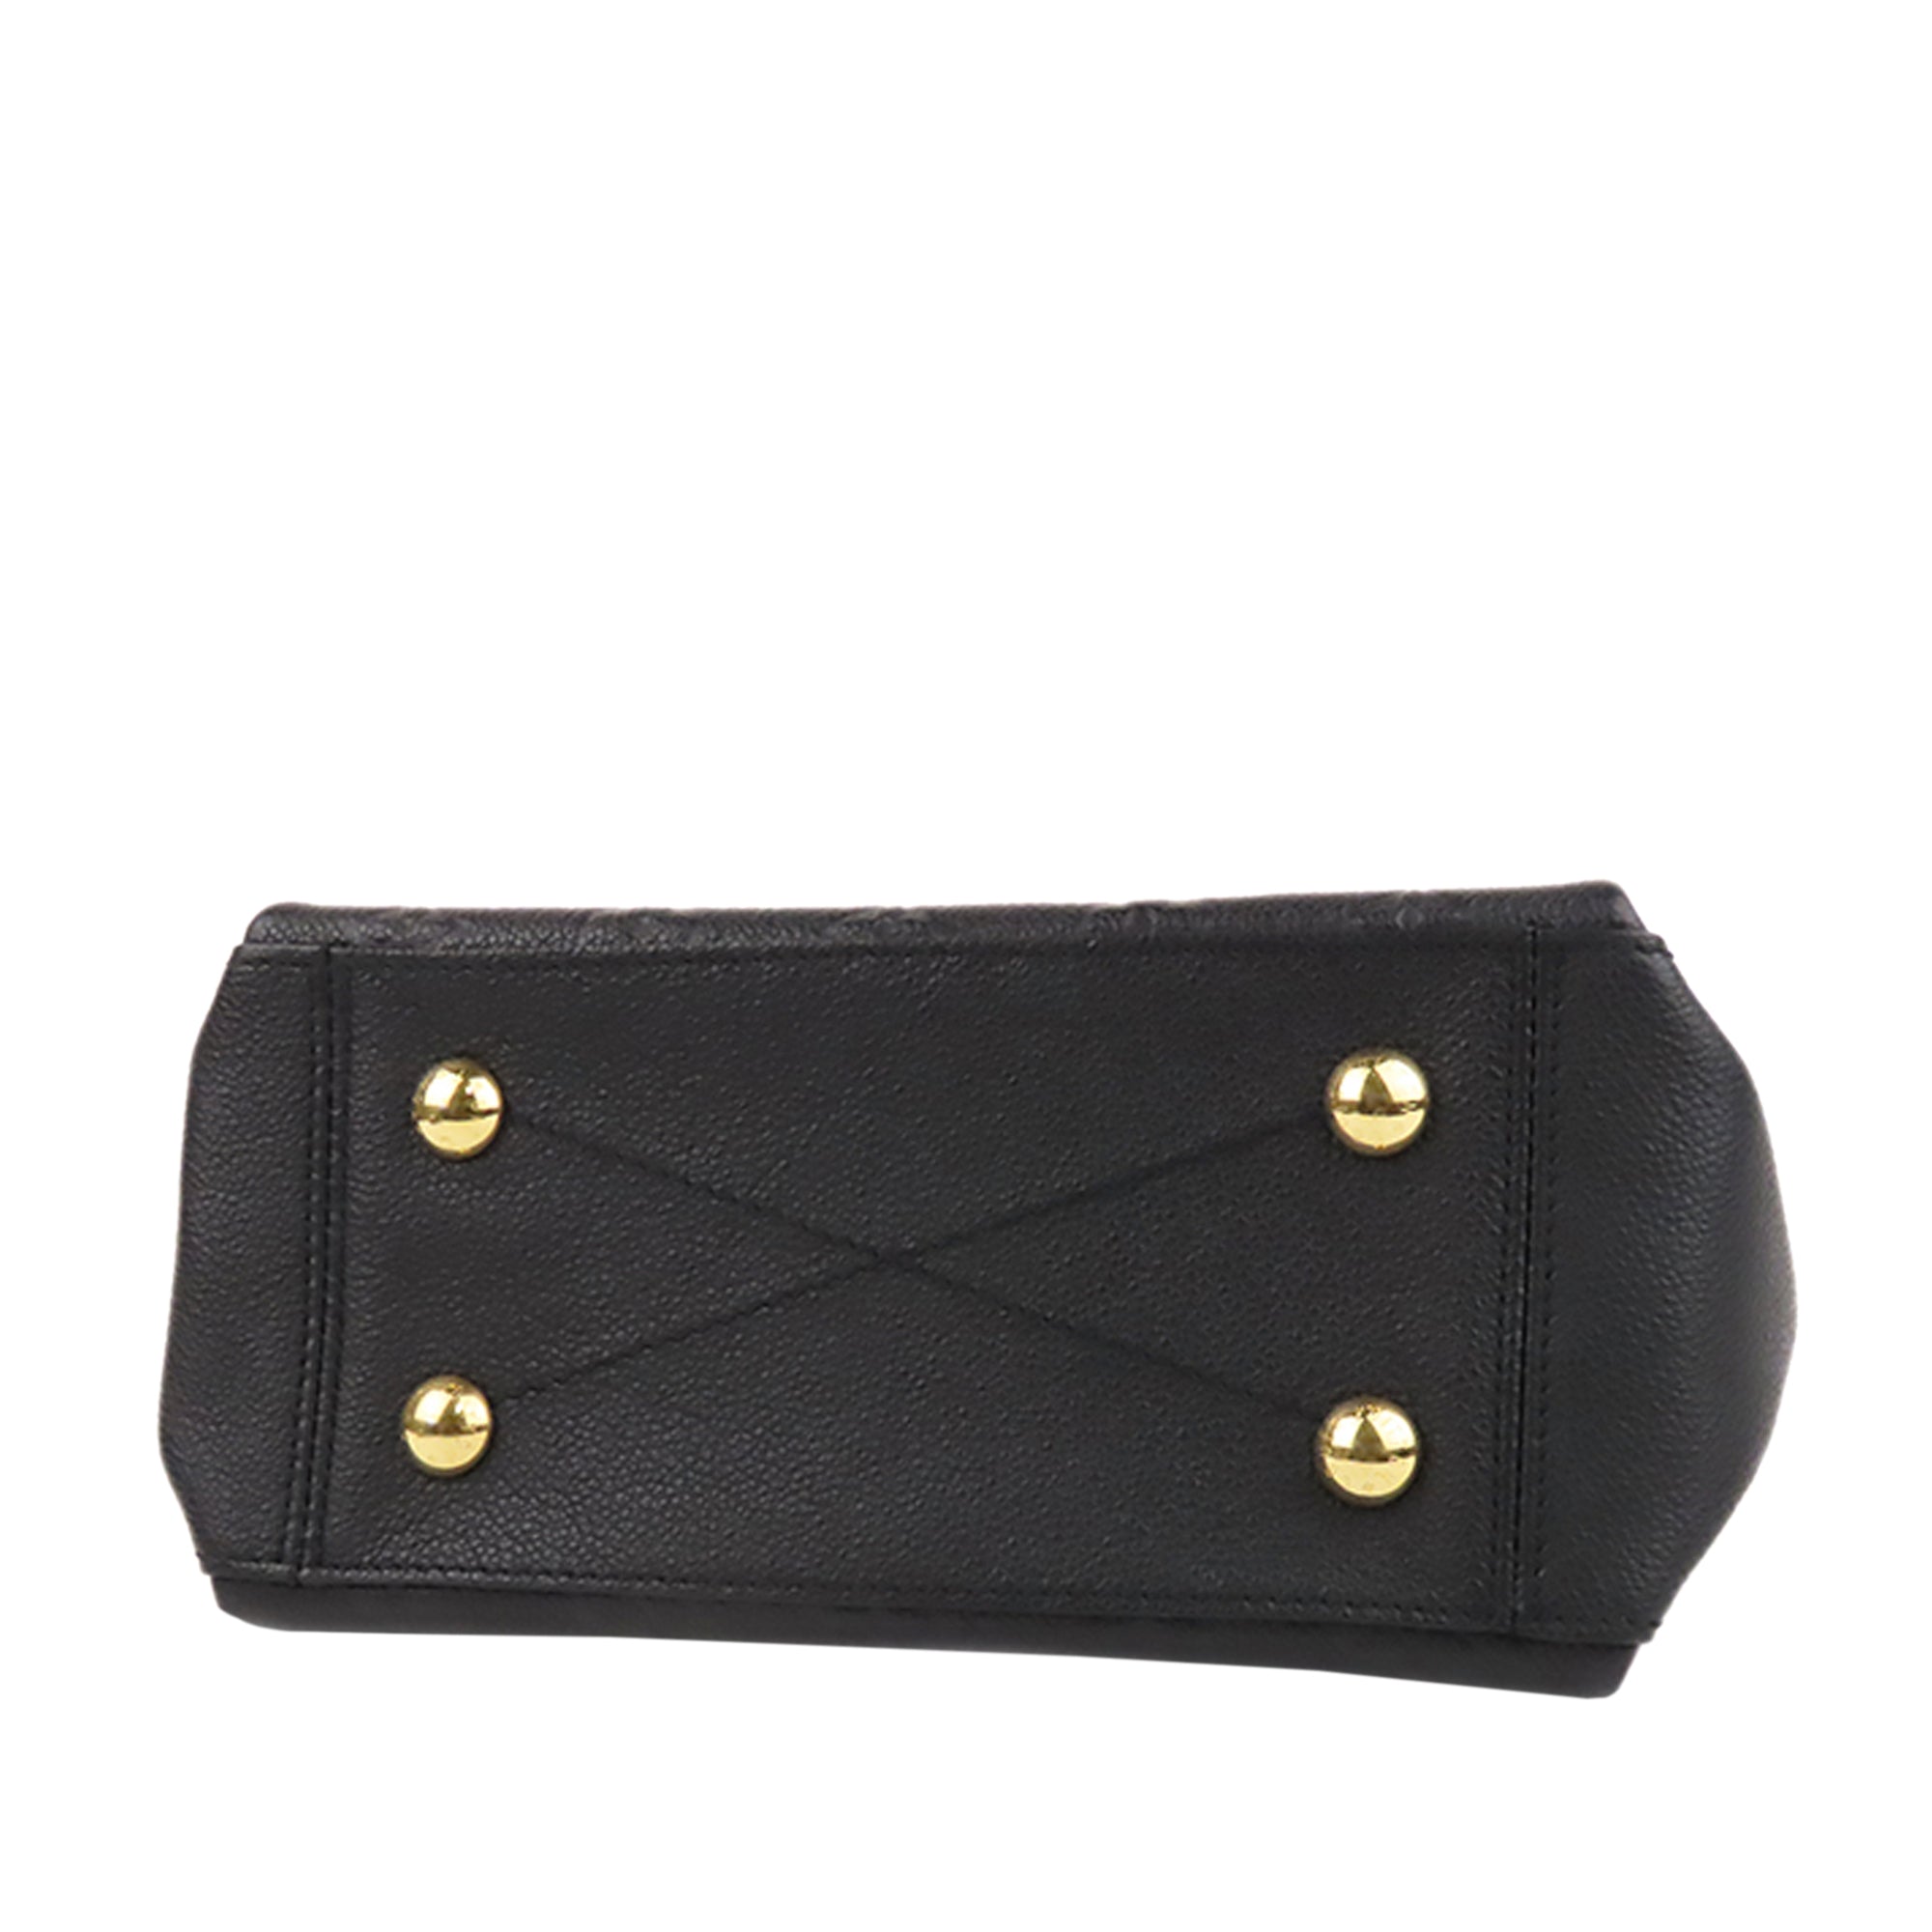 LV Black Empreinte Leather Surene BB Bag Excellent Condition Completens :  box, receipt, card & dustbag Size : 24x16cm IDR 25.000.000